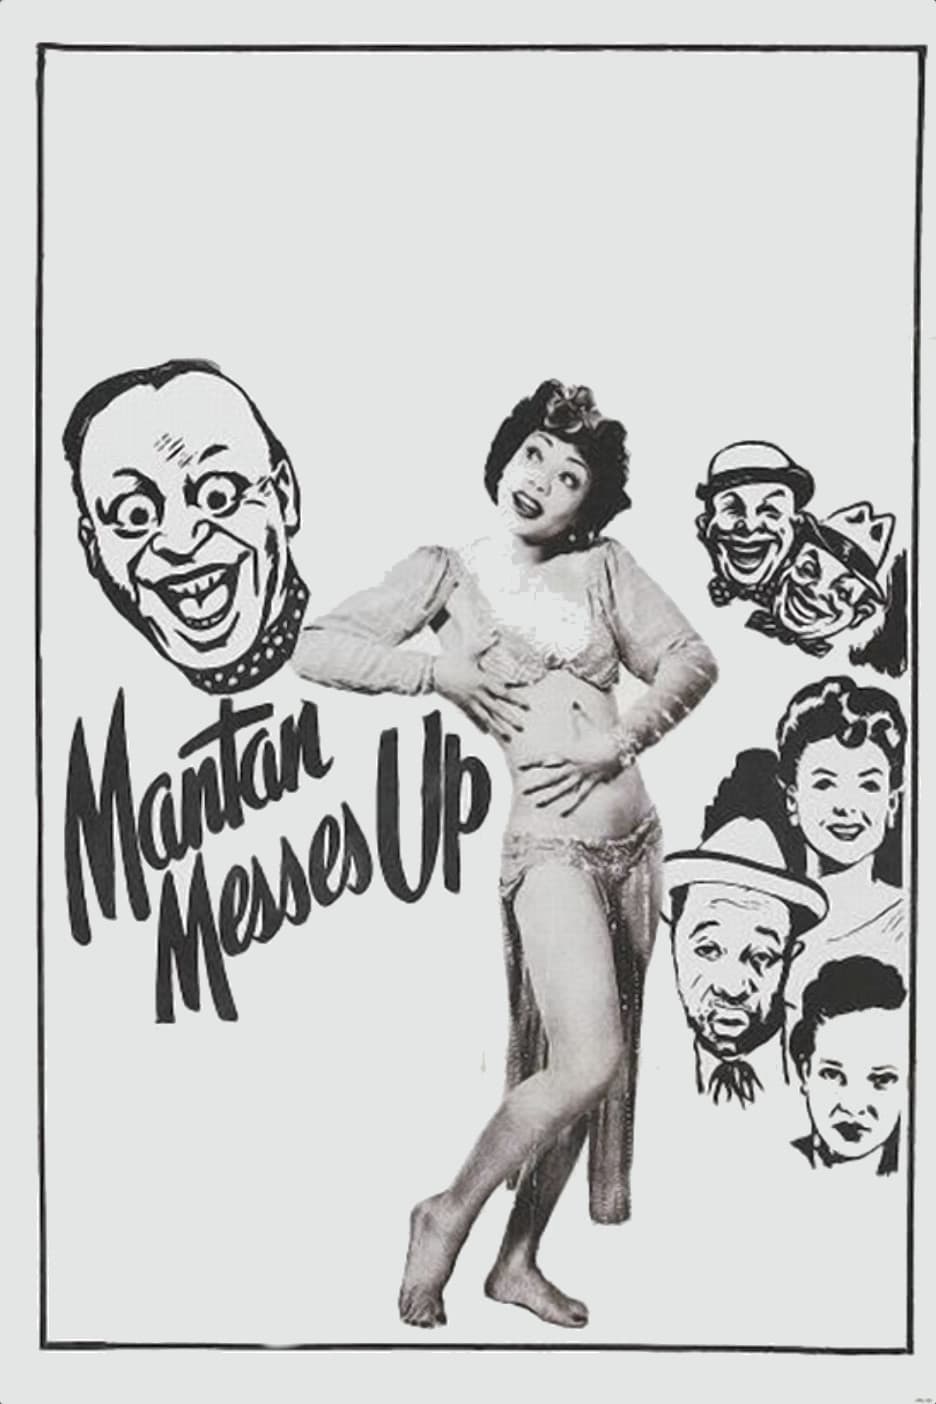 Mantan Messes Up (1946)